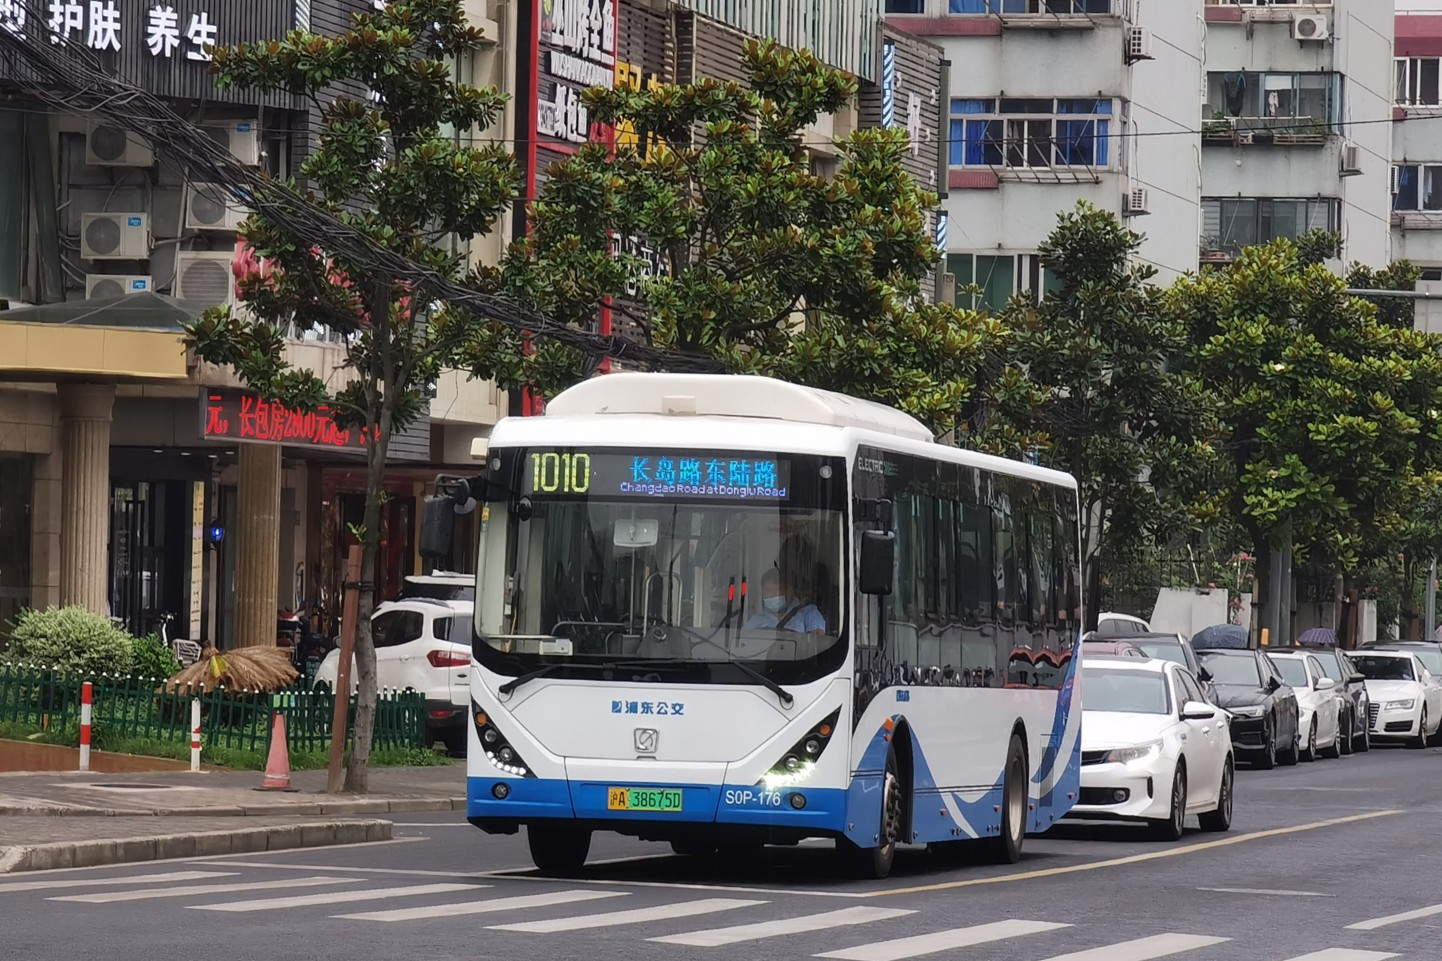 上海1010路公交车路线